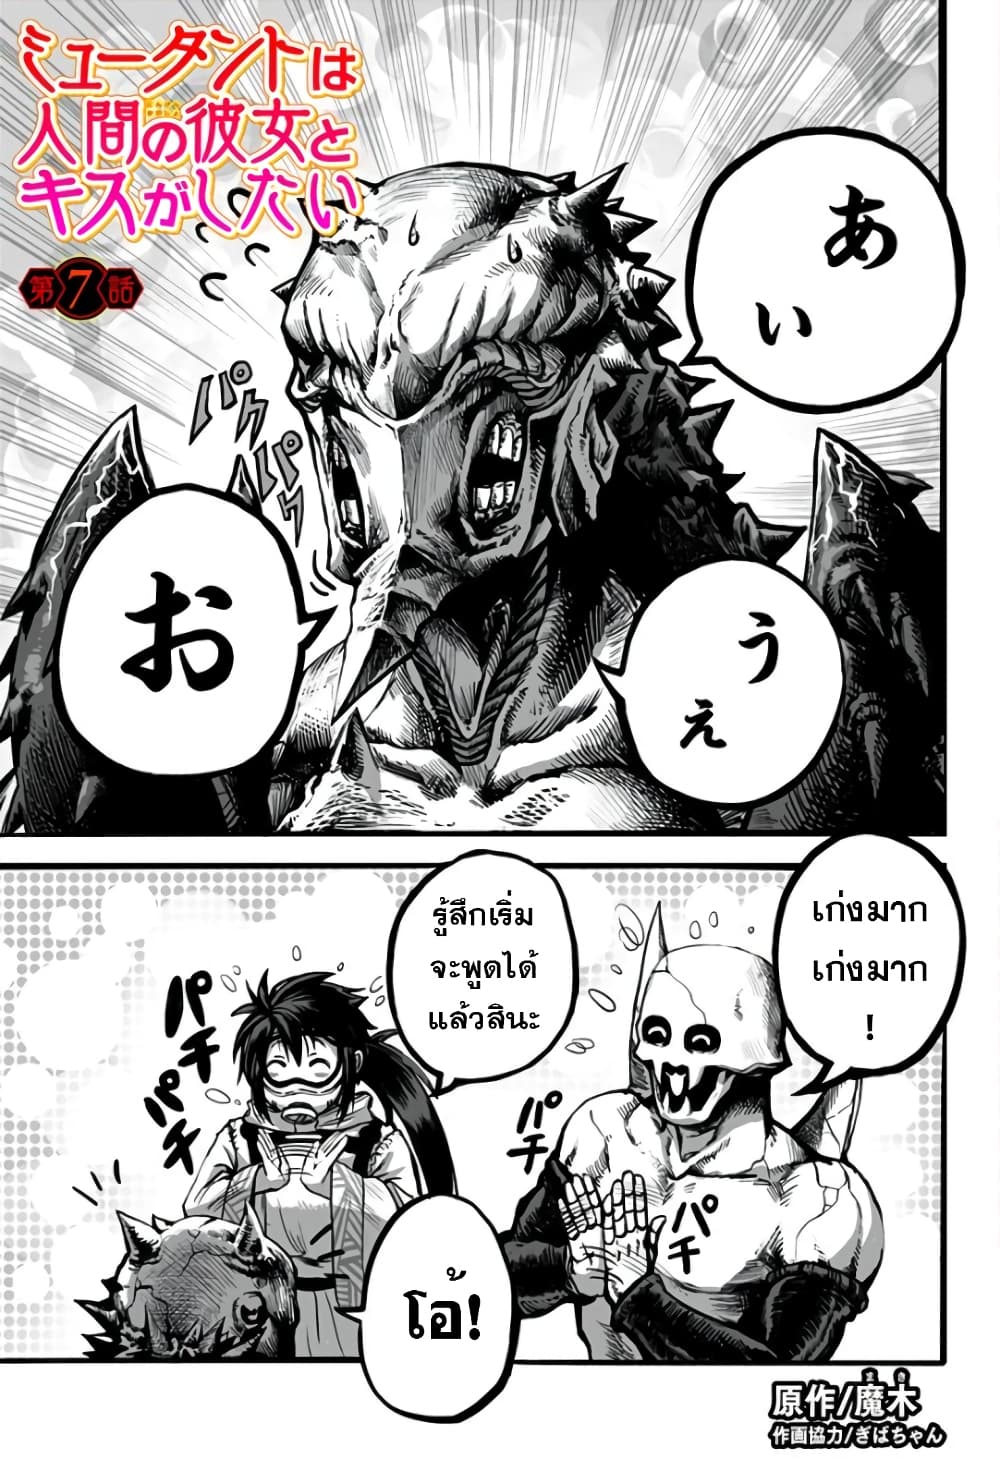 อ่านการ์ตูน Mutant wa ningen no kanojo to kisu ga shitai 7 ภาพที่ 1